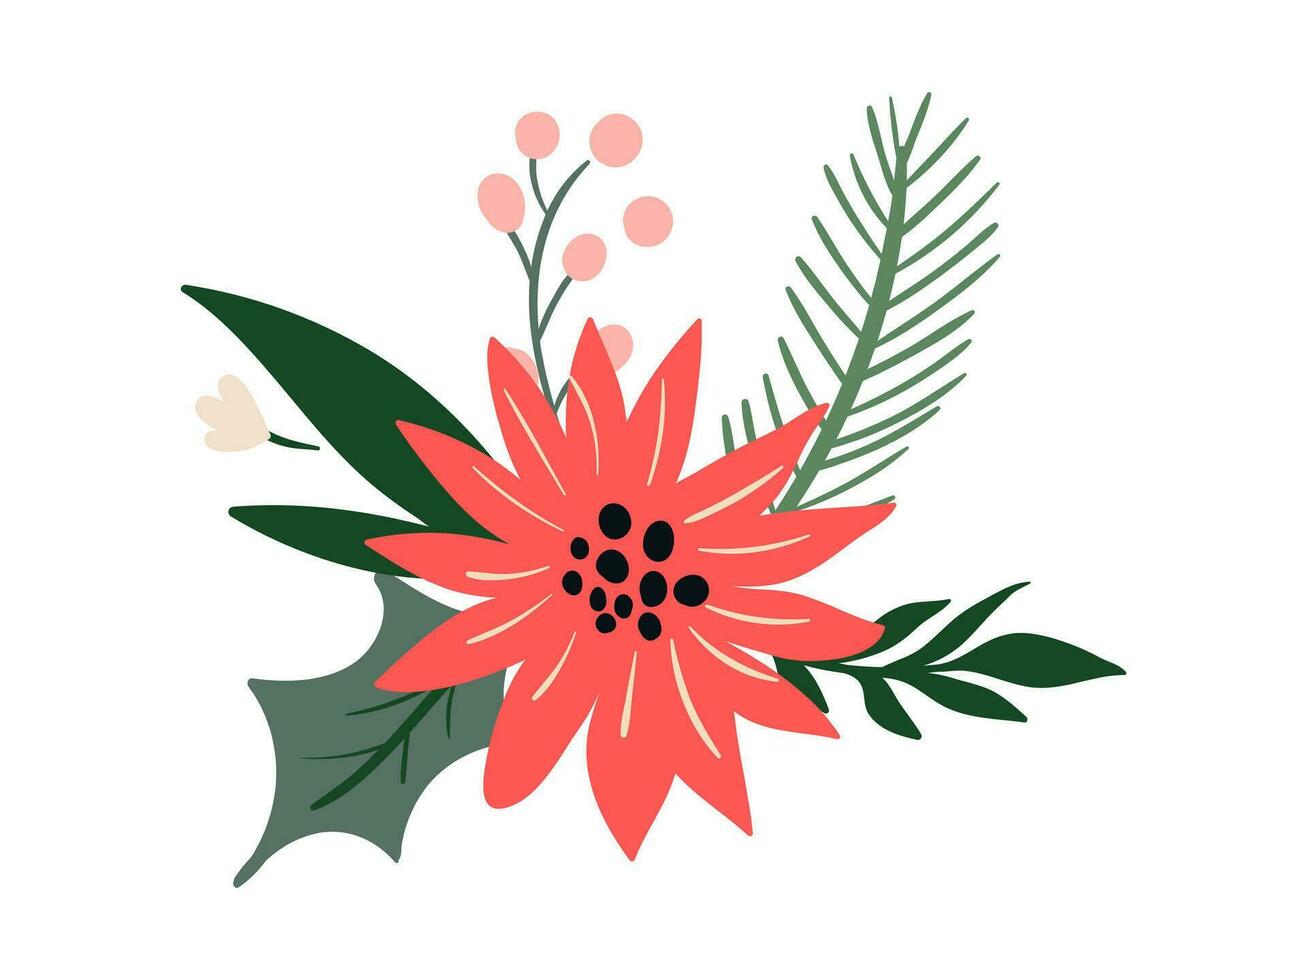 bloemen Kerstmis illustratie verzameling vector